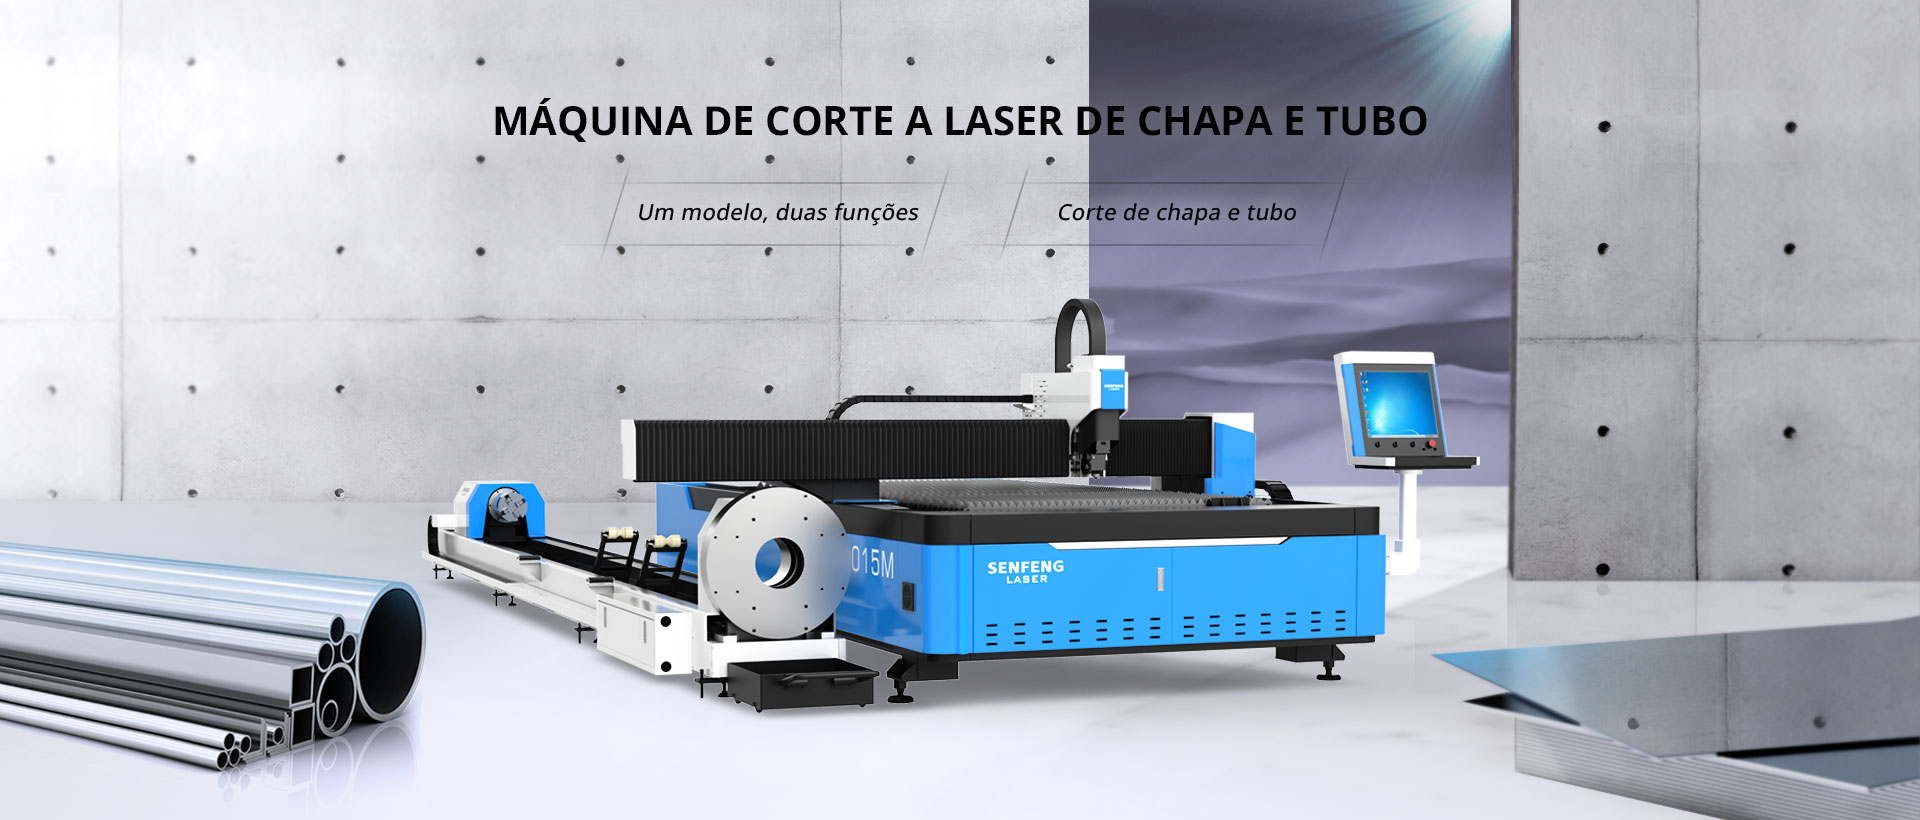 Máquina de corte a laser de chapa e tubo